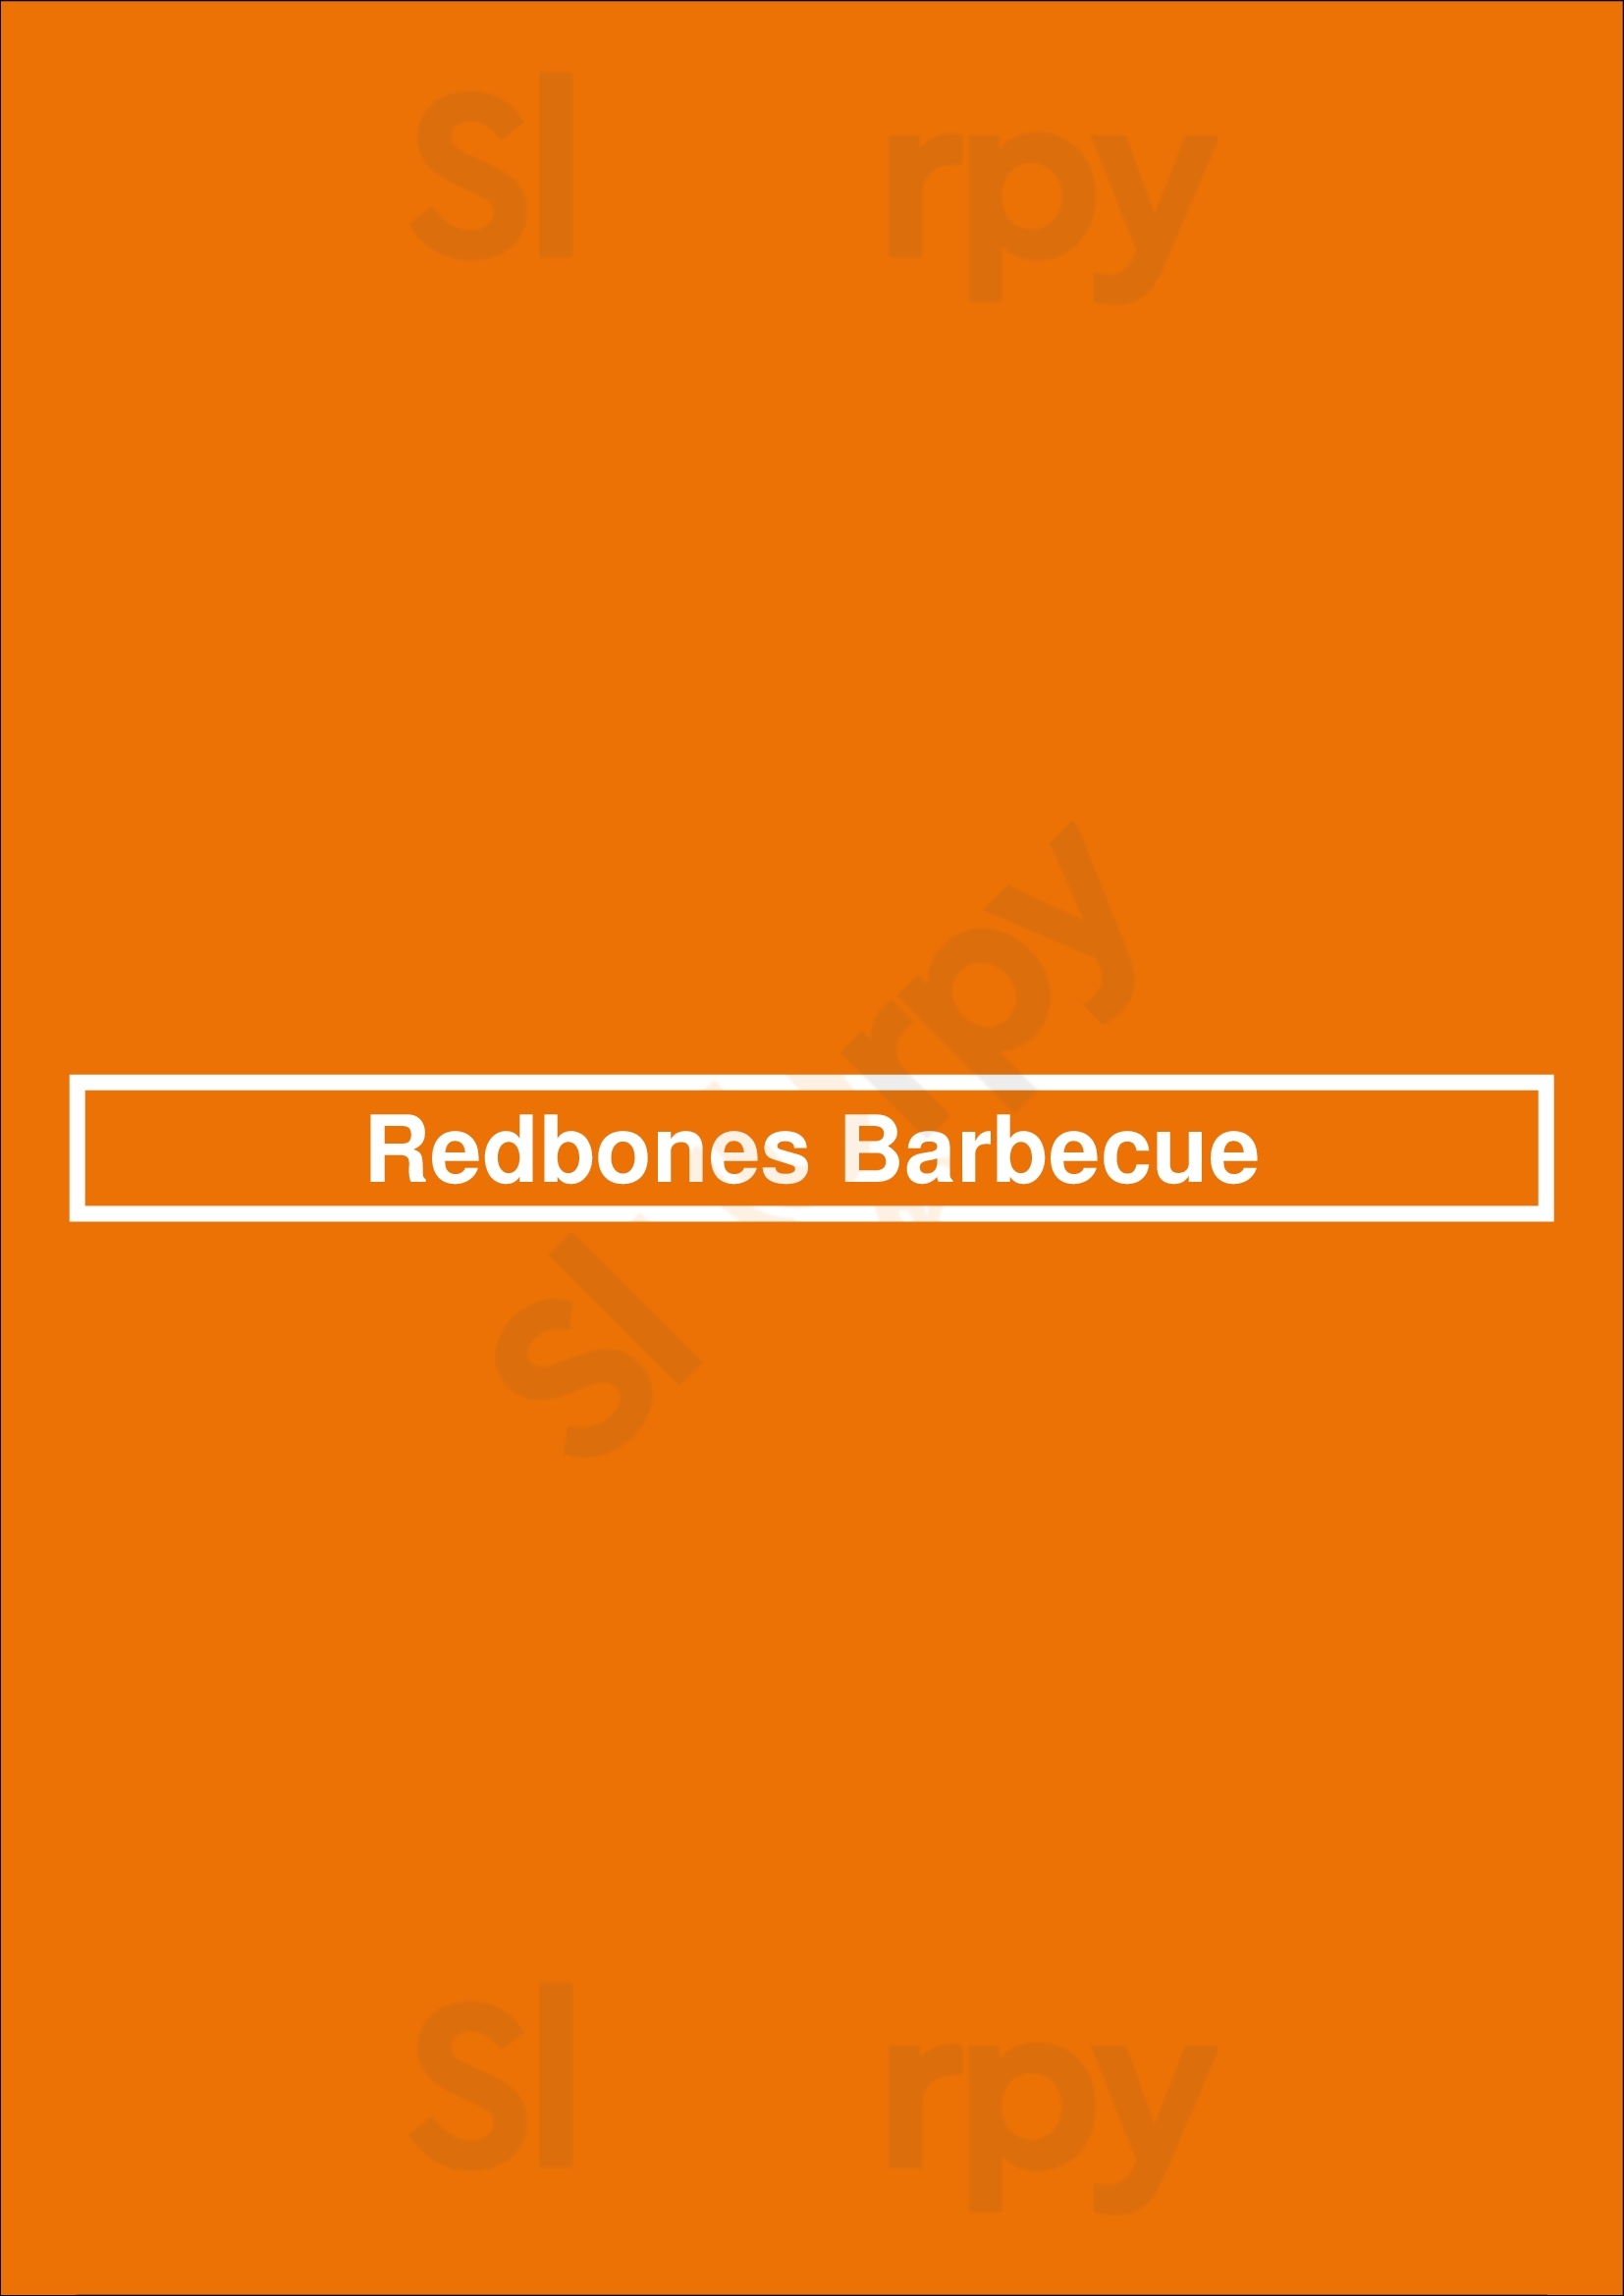 Redbones Barbecue Somerville Menu - 1